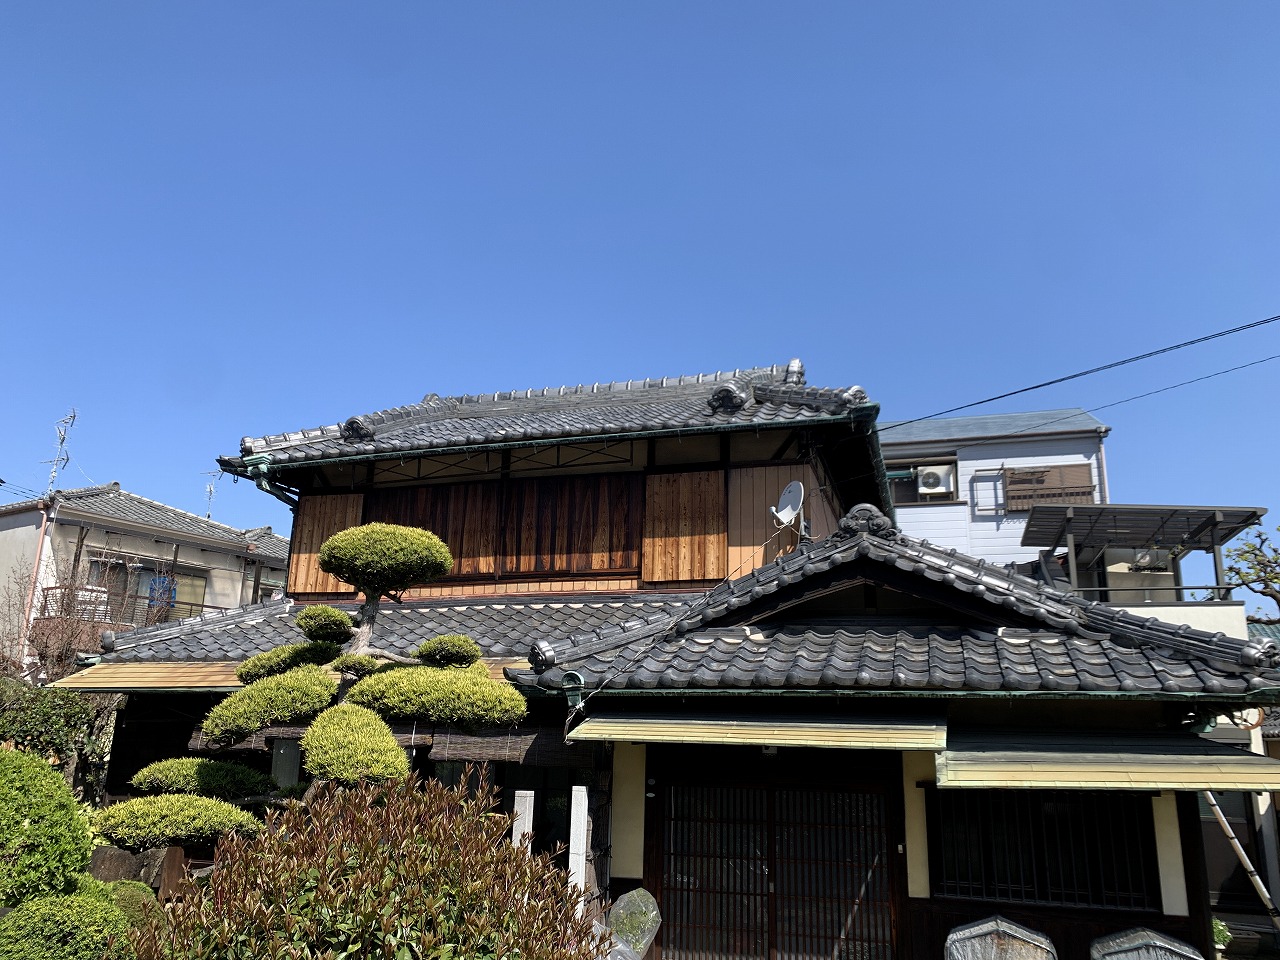 日本の伝統的な入母屋屋根の住宅です。